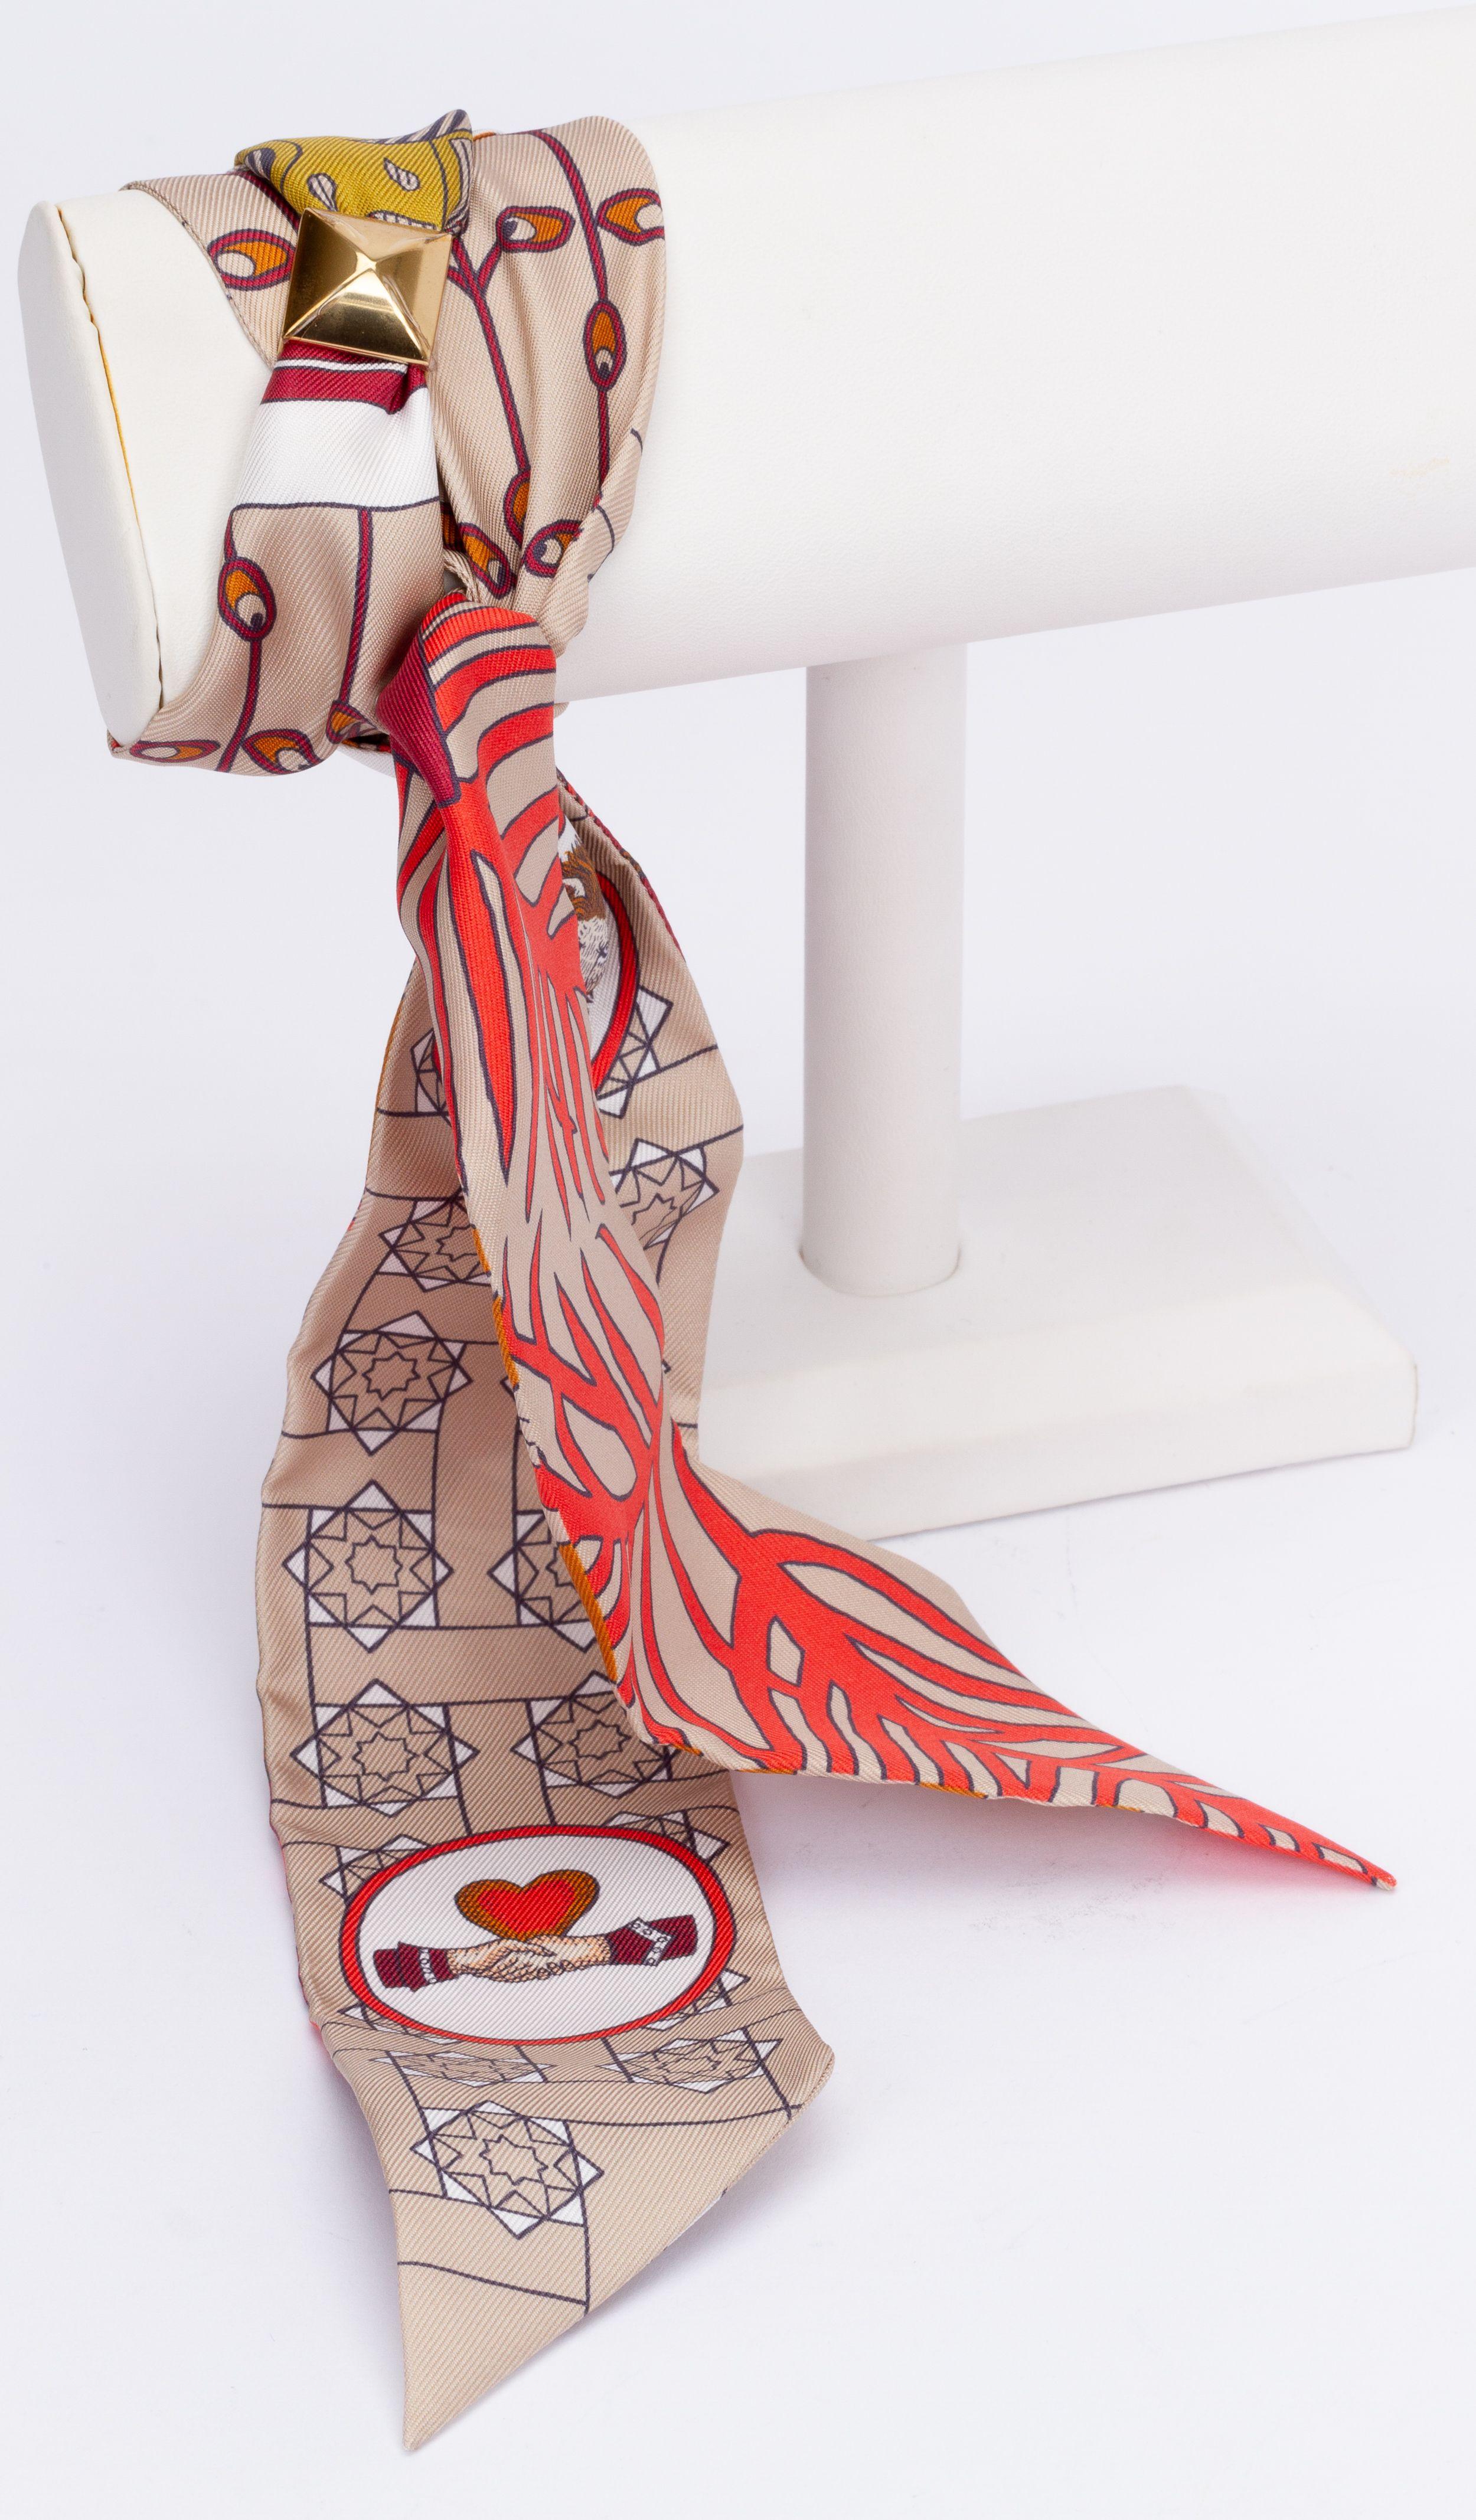 Neu Hermès La Danse Des Amazones Twilly. Der Schal ist aus Seide und die Hauptfarben sind Beige und Koralle. Der Aufdruck zeigt Tiere wie eine Eule. Das Stück wird mit einem Schalring, einer Originalschachtel und einem Band geliefert.